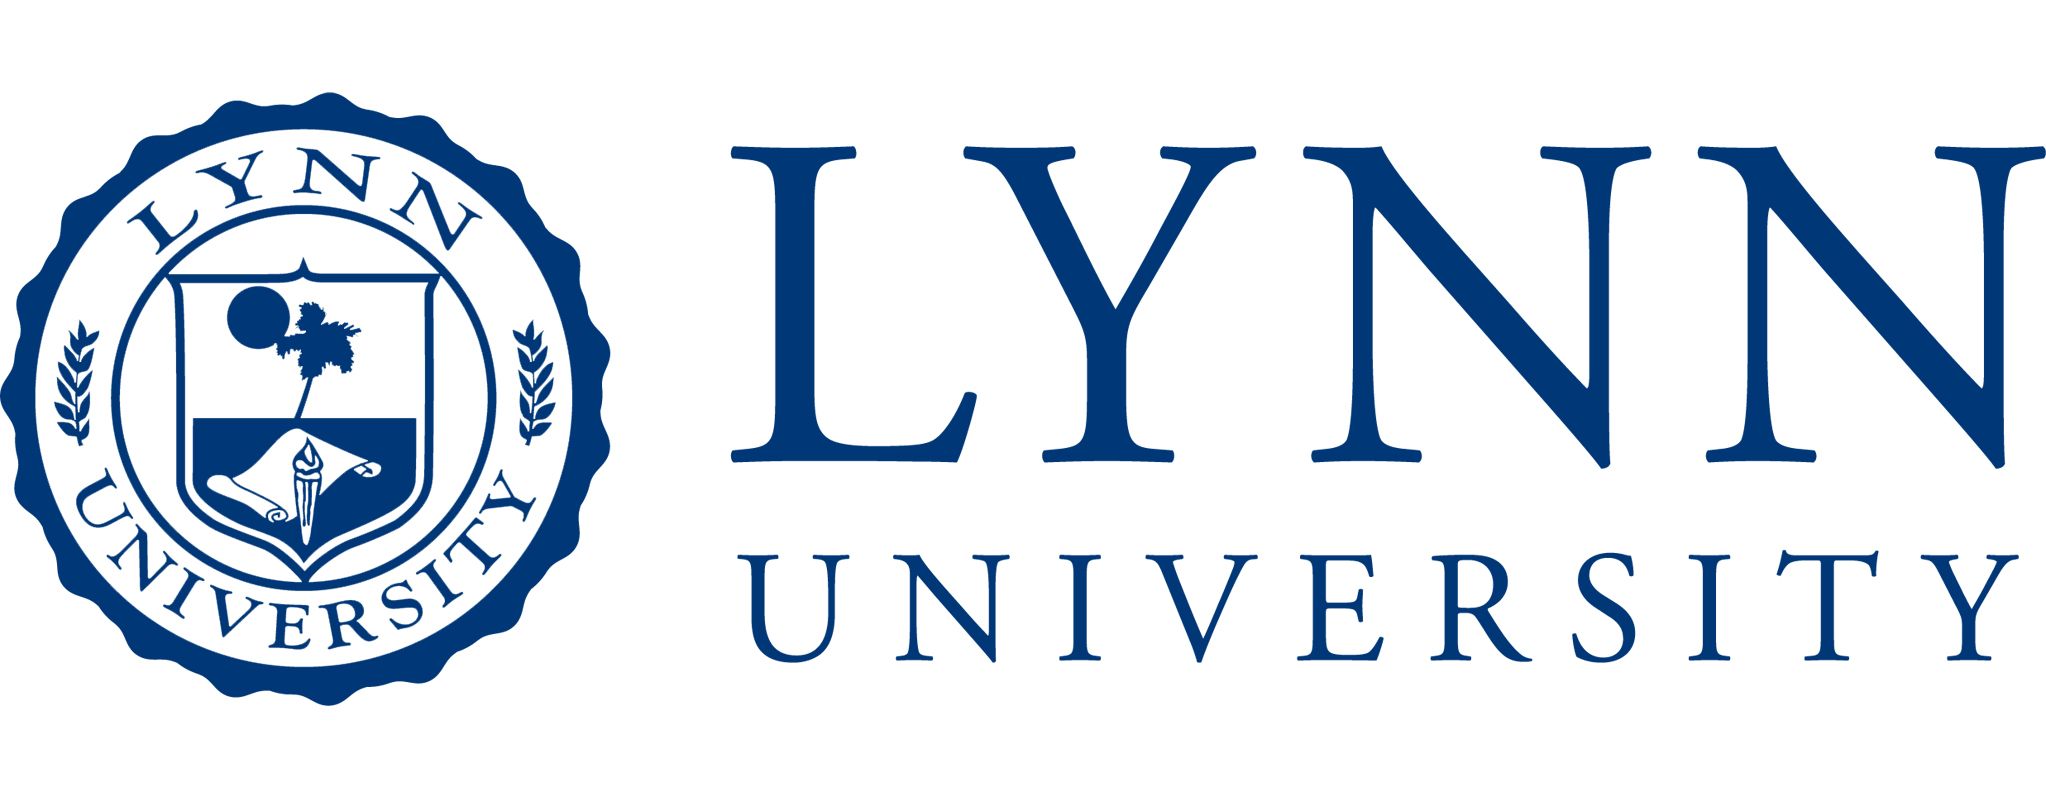 Lynn University лого